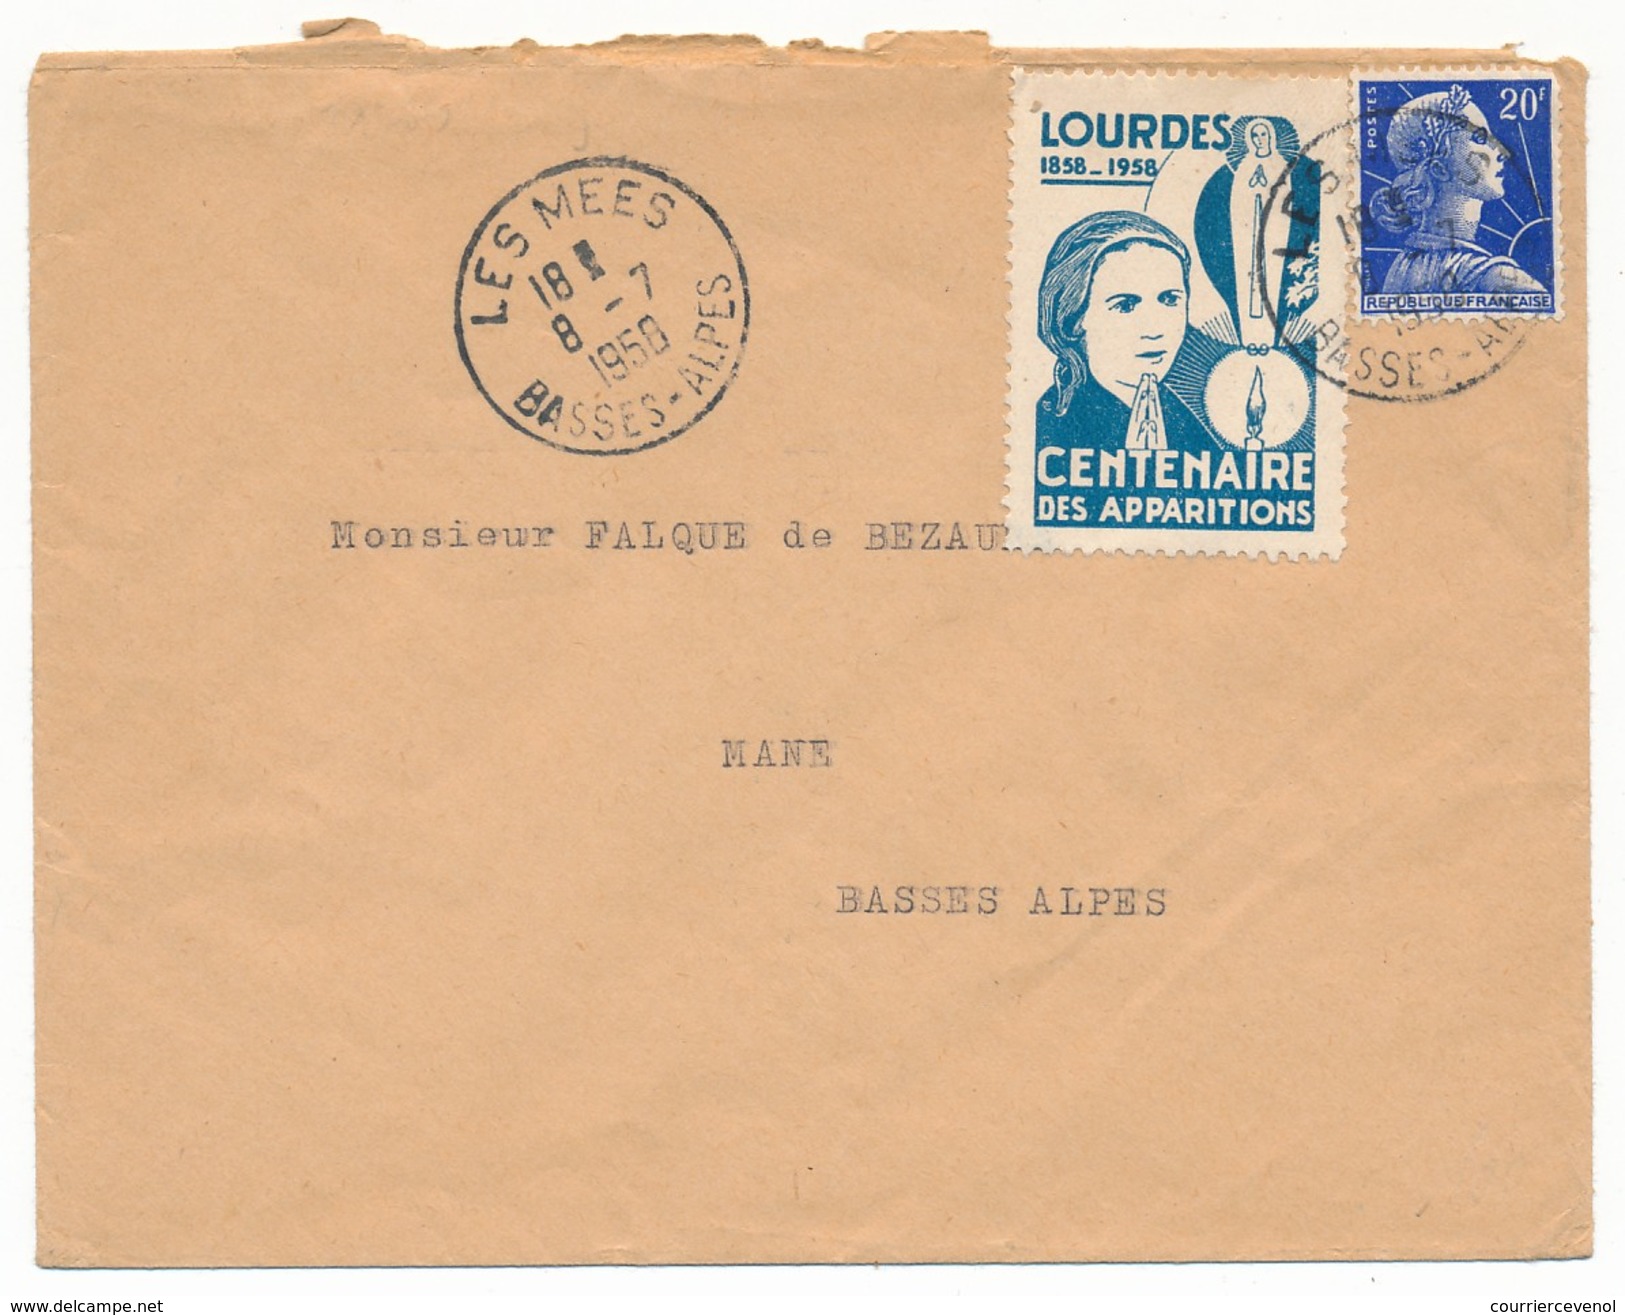 FRANCE => Vignette "LOURDES - Centenaire Des Apparitions" Sur Enveloppe - Les Mées Basses Alpes 1950 - Lettres & Documents